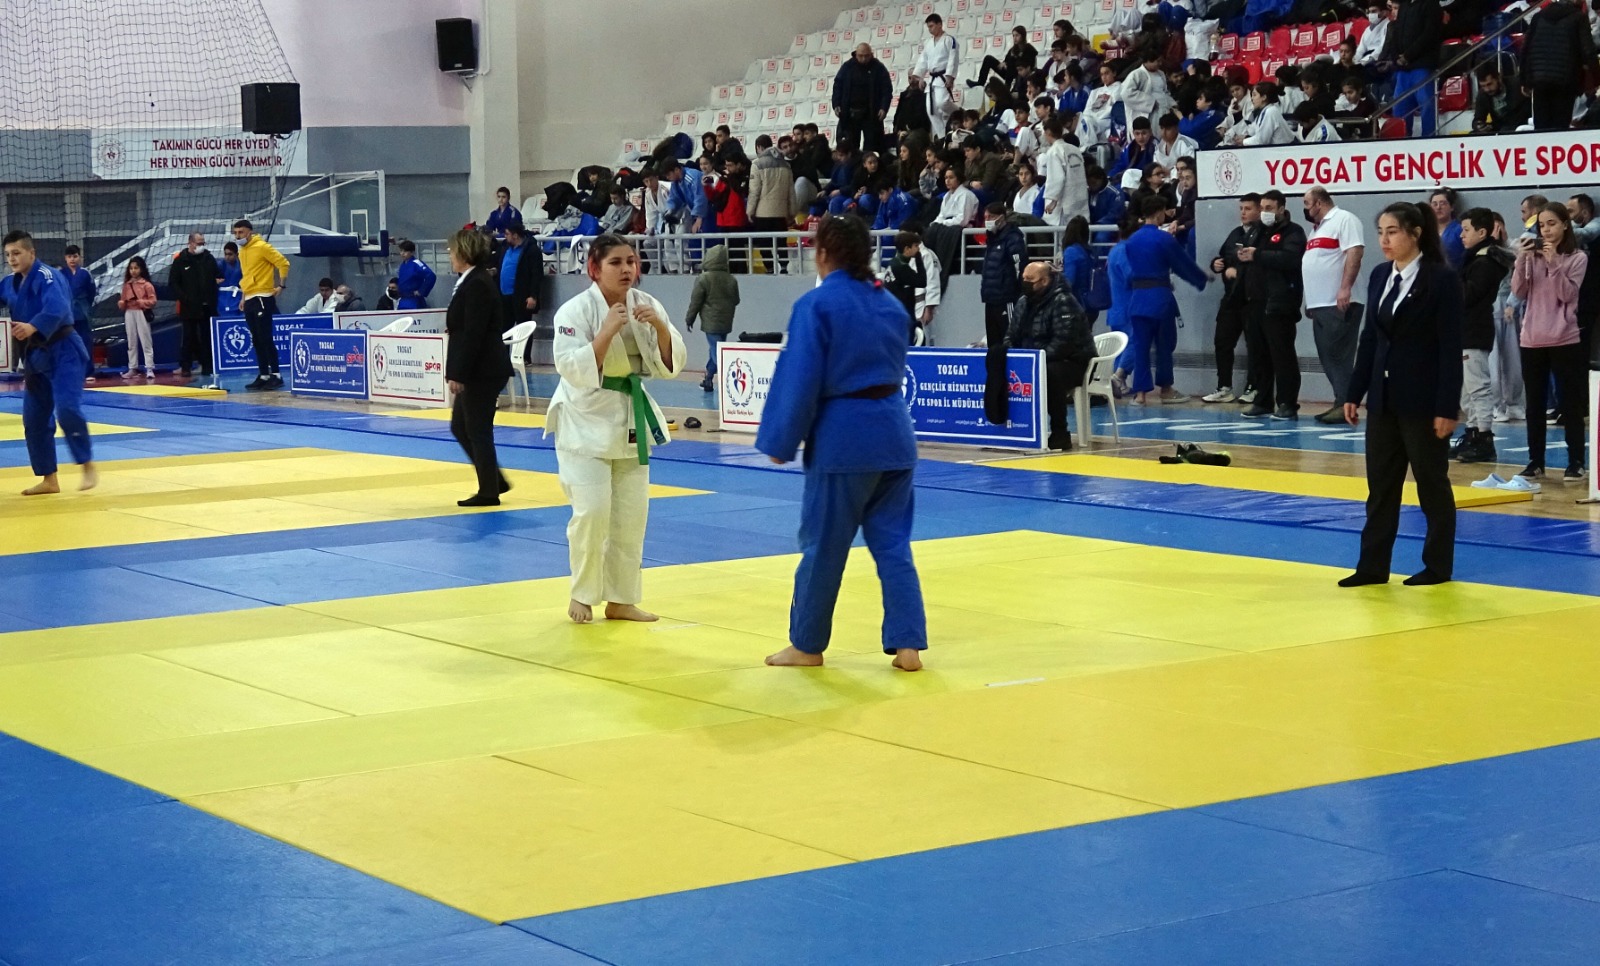 Yıldızlar Judo Türkiye Şampiyonası Yozgat’ta yapıldı